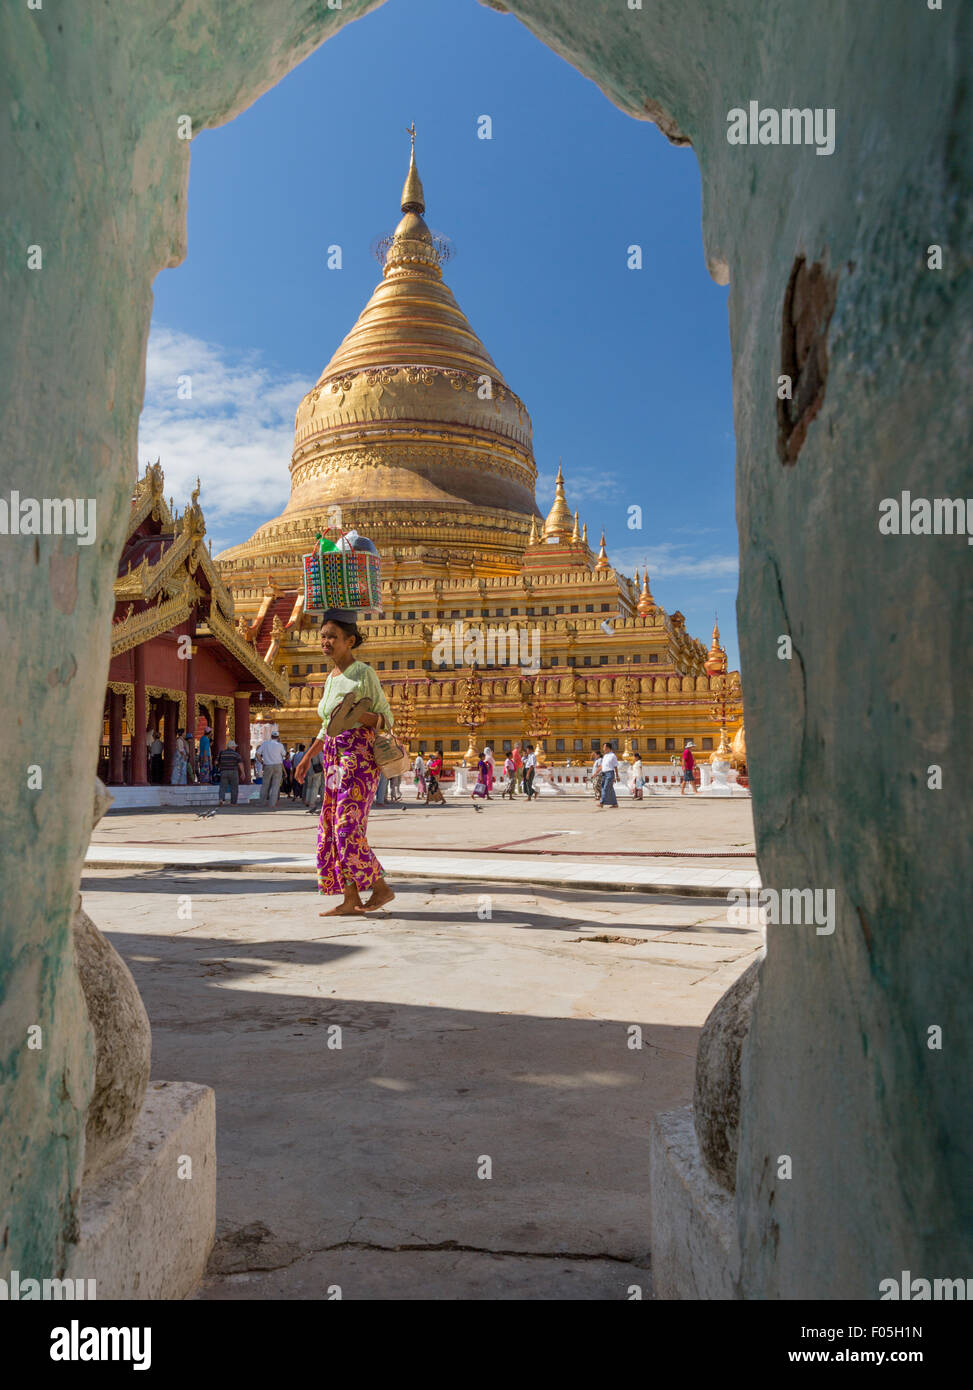 Woman carrying basket sur sa tête traverse Plaza en face de la Pagode Shwezigon stupa à Nyaung U Myanmar. Encadrée dans arch Banque D'Images